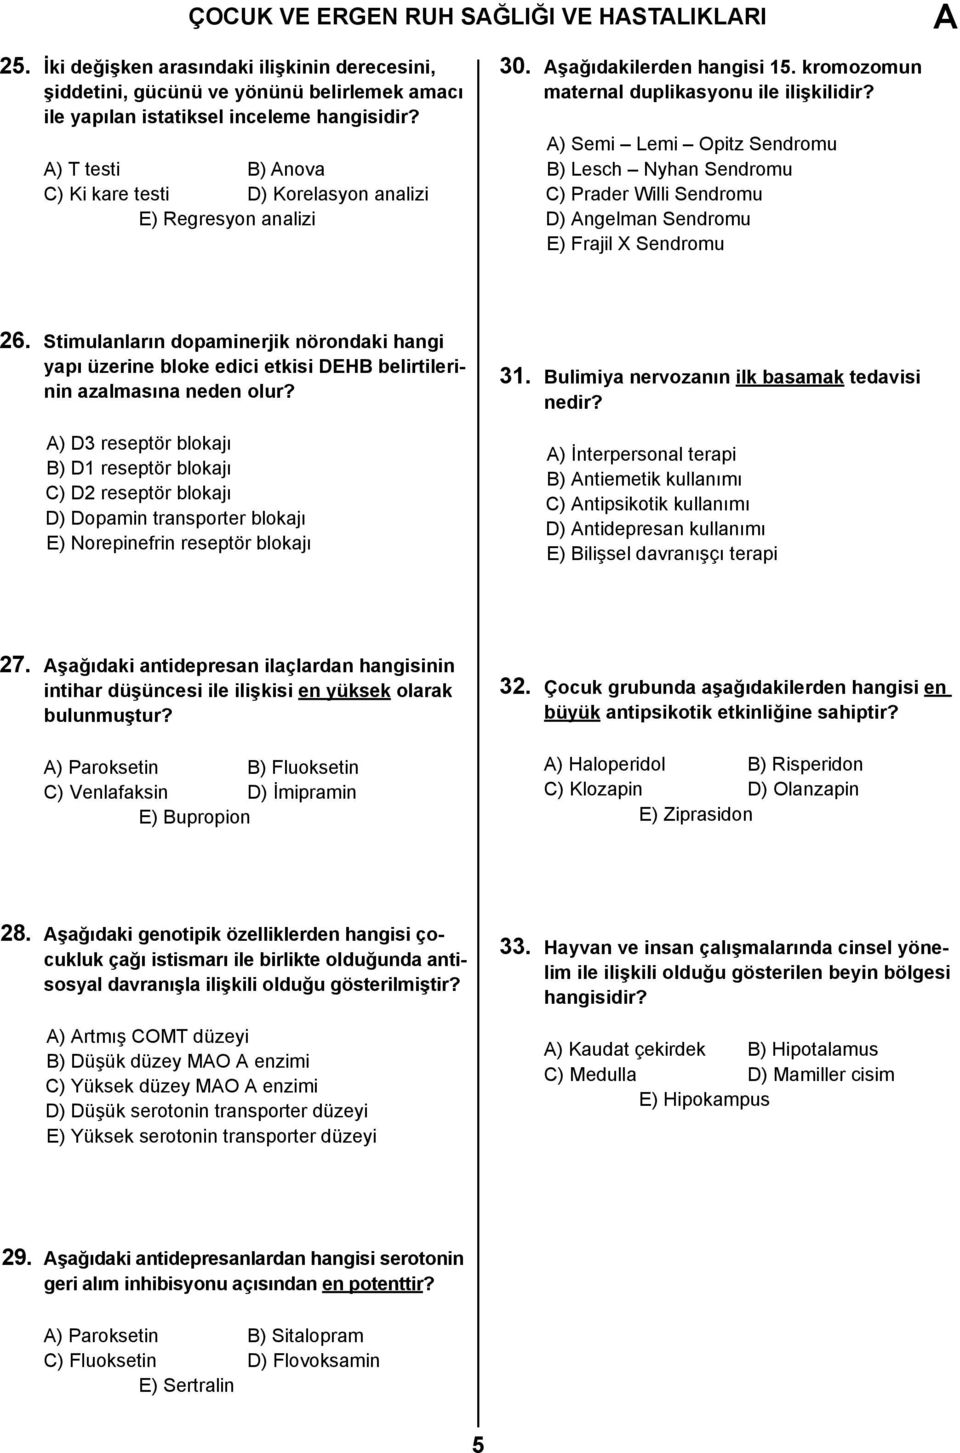 analizi 30. şağıdakilerden hangisi 15. kromozomun maternal duplikasyonu ile ilişkilidir?